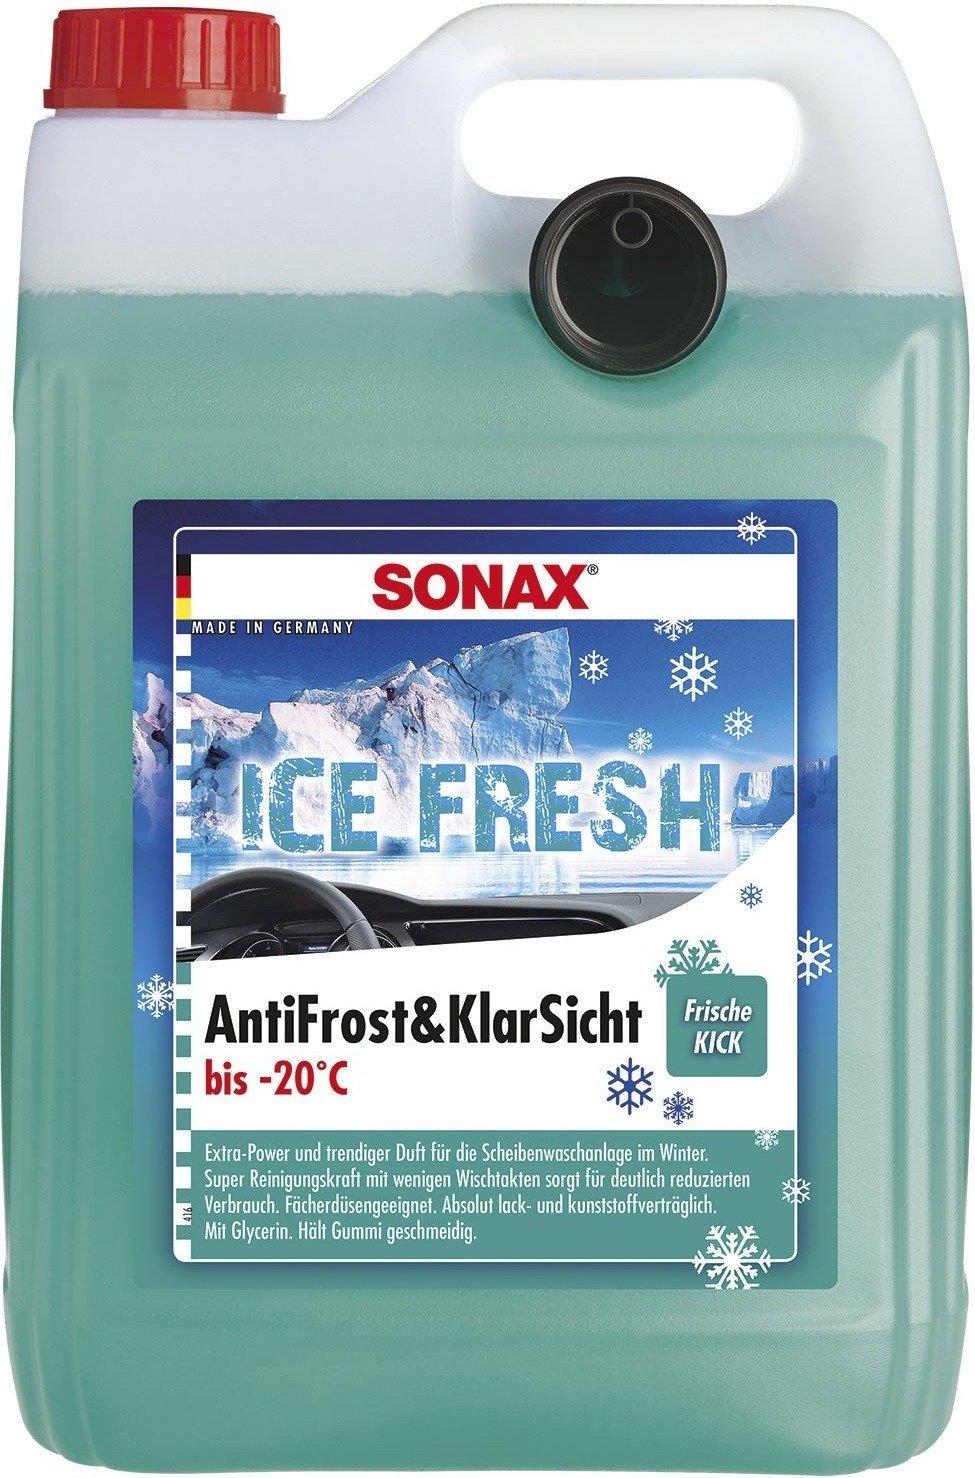 Sonax AntiFrost&KlarSicht bis -20°C IceFresh (5 l) Test - ab 13,45 €  (Dezember 2023)